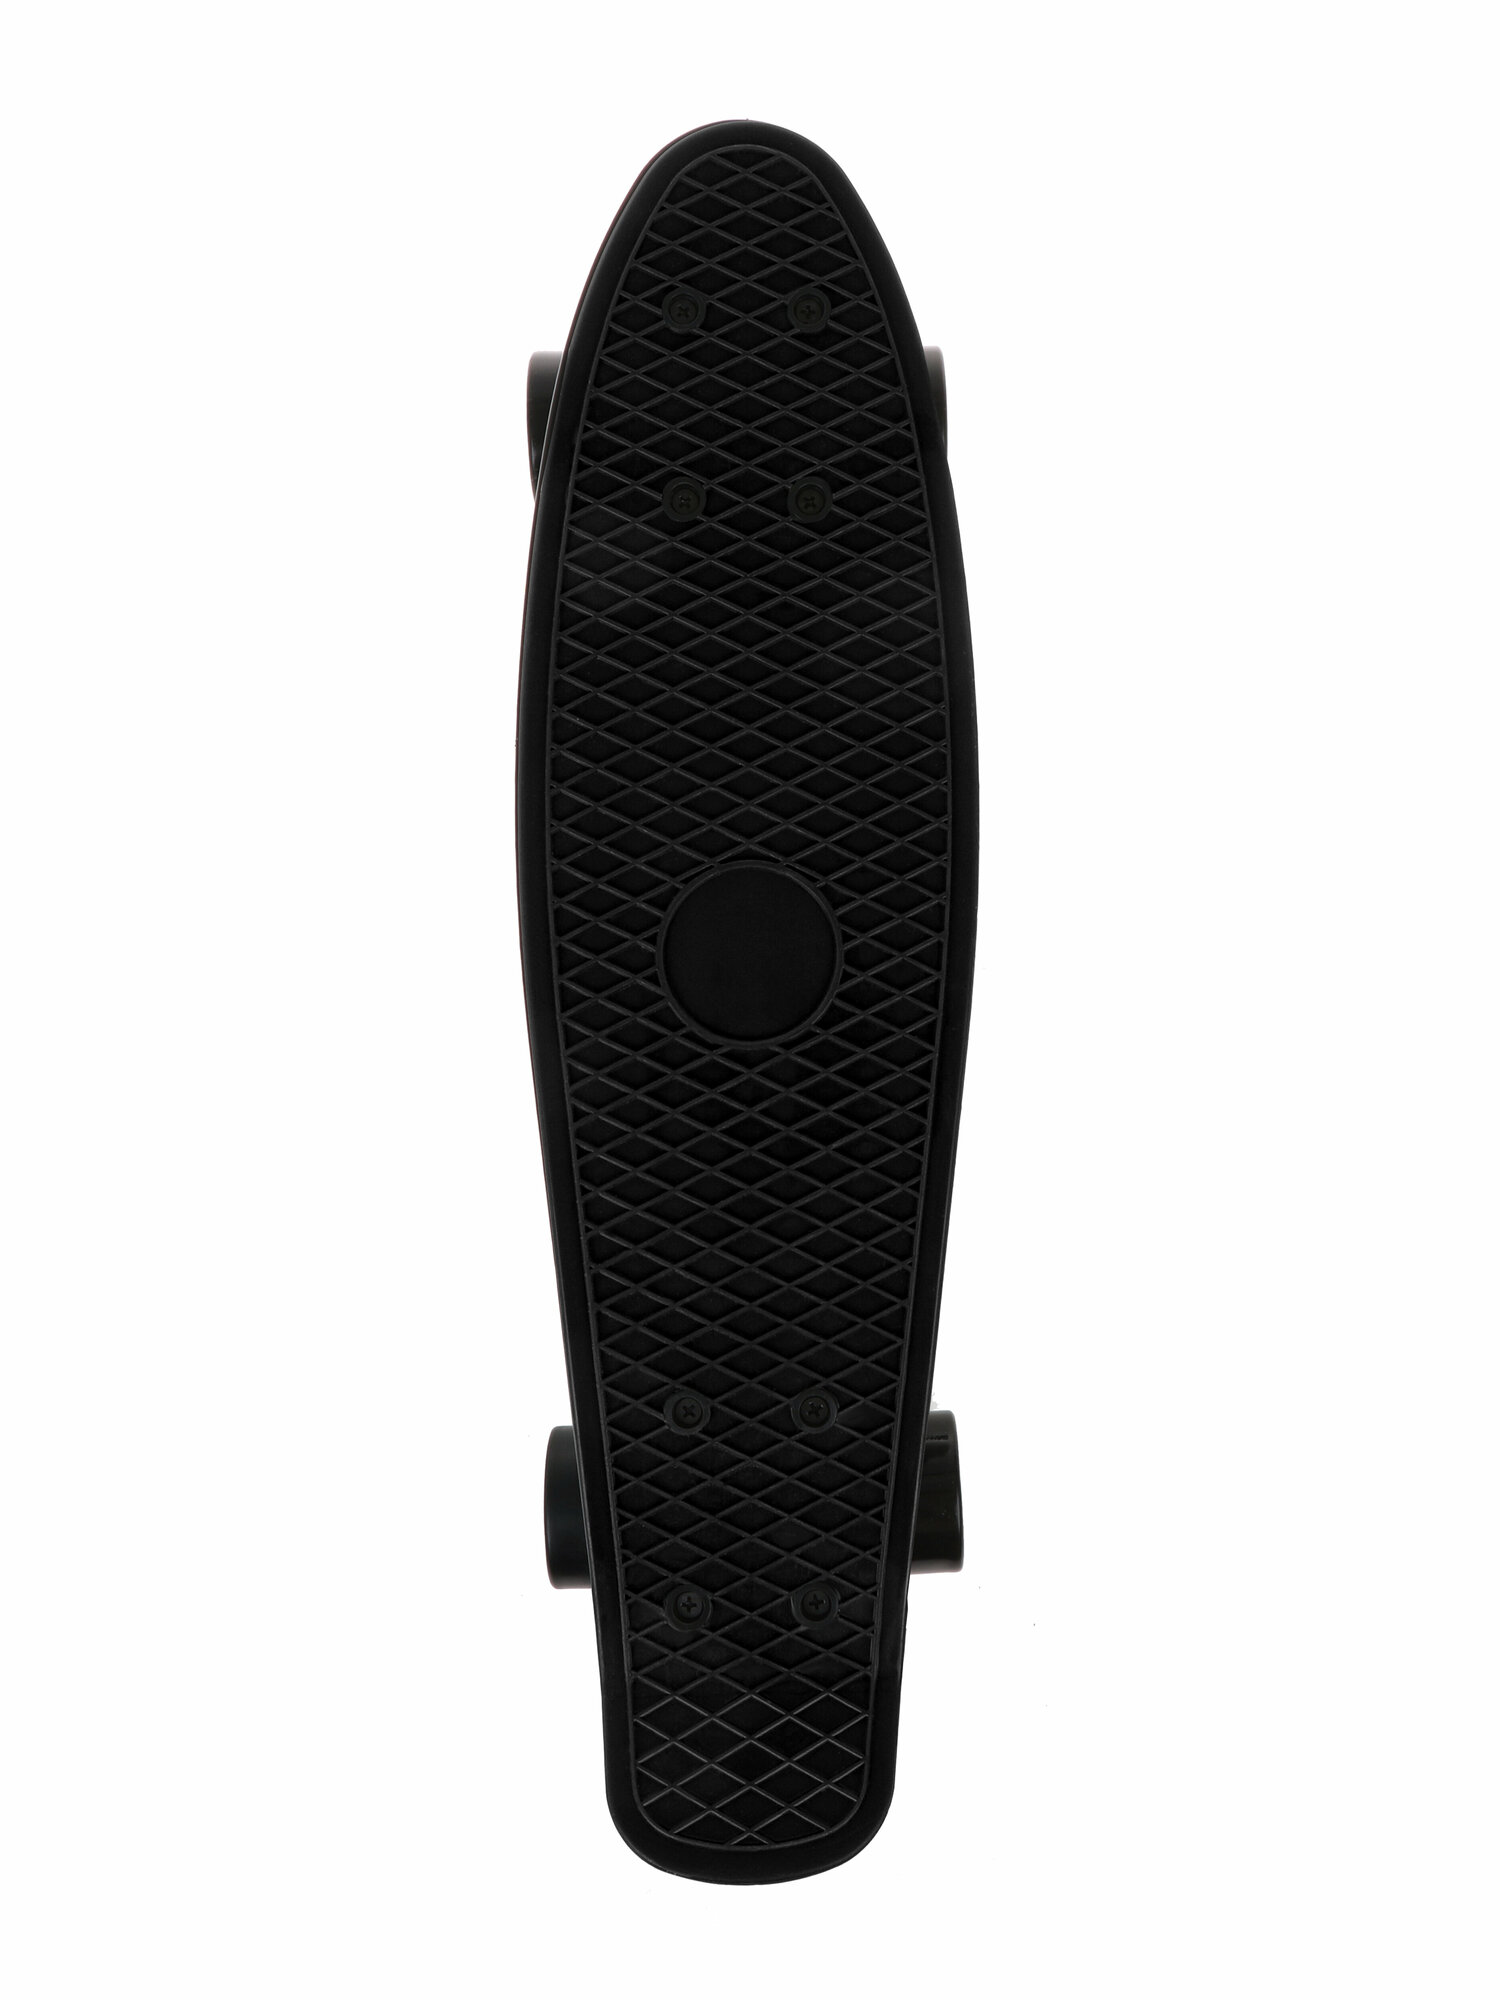 Скейтборд пласт. 55x15 см, PVC колеса без света с пластмассовым креплениям, чёрный